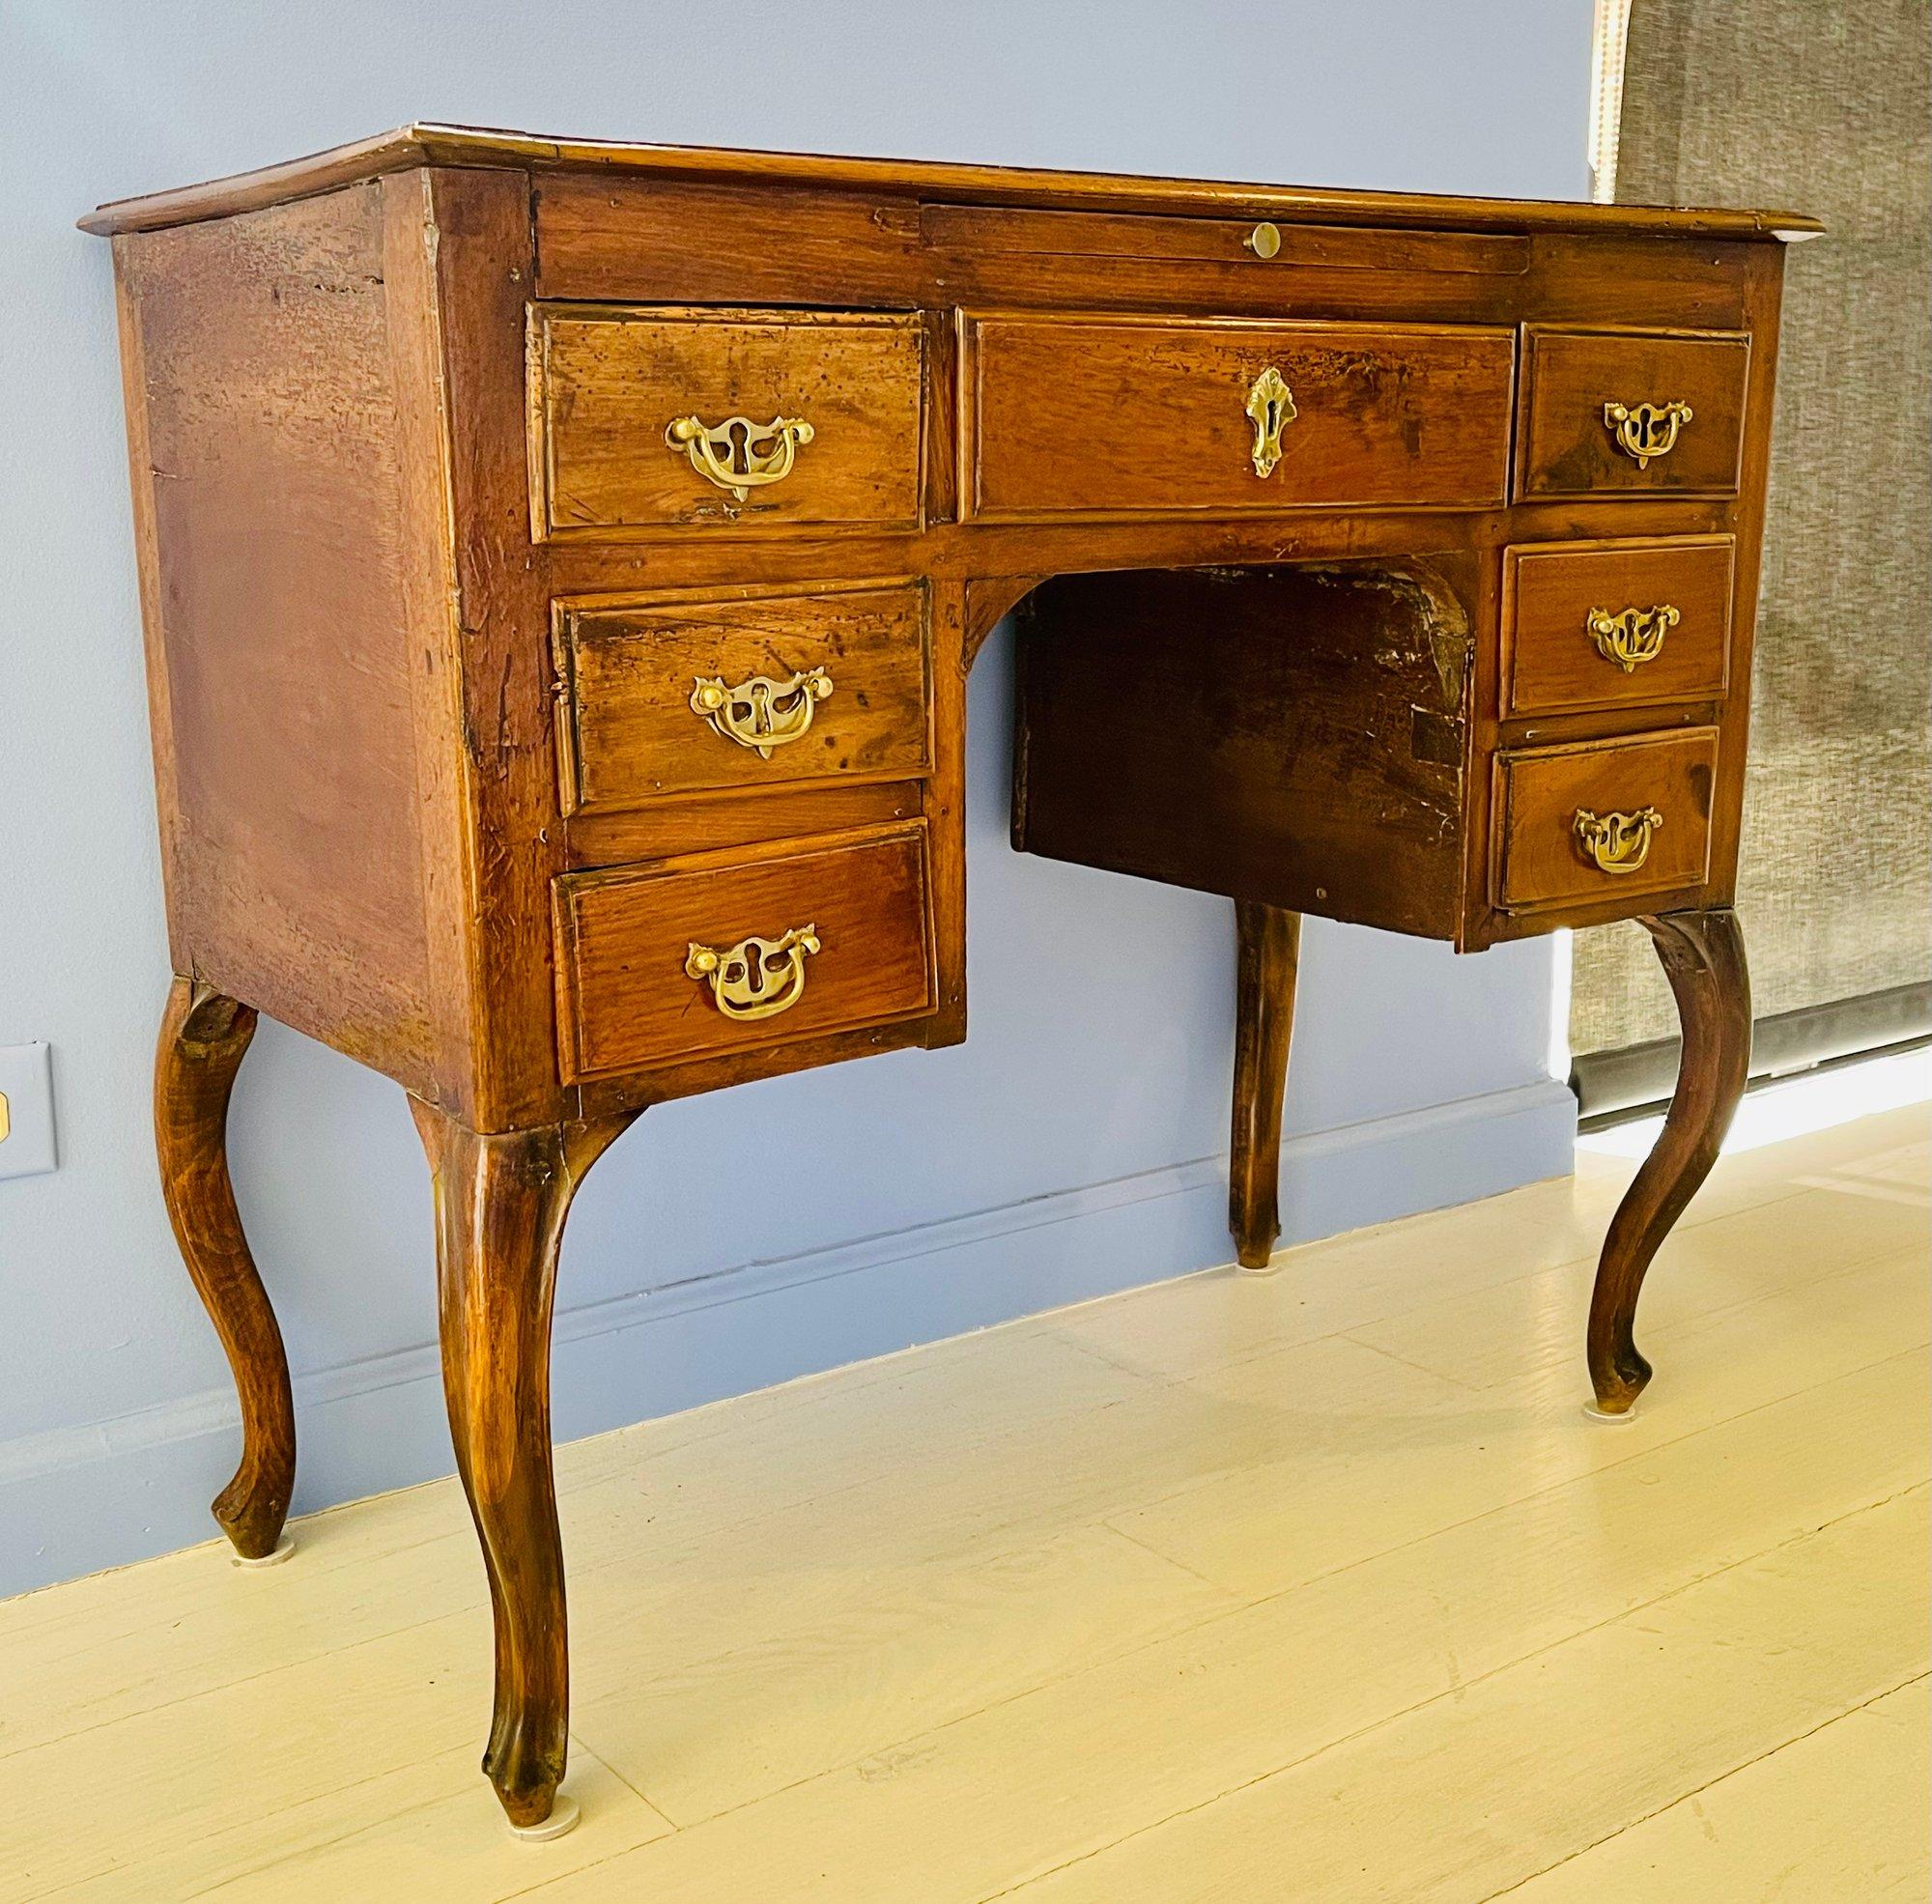 Antiker kleiner Schreibtisch auf Cabriole-Beinen mit originalen Messingbeschlägen. Der Schreibtisch verfügt über 7 Schubladen und eine ausziehbare Rutsche an der Vorderseite.

Abmessungen
32,5